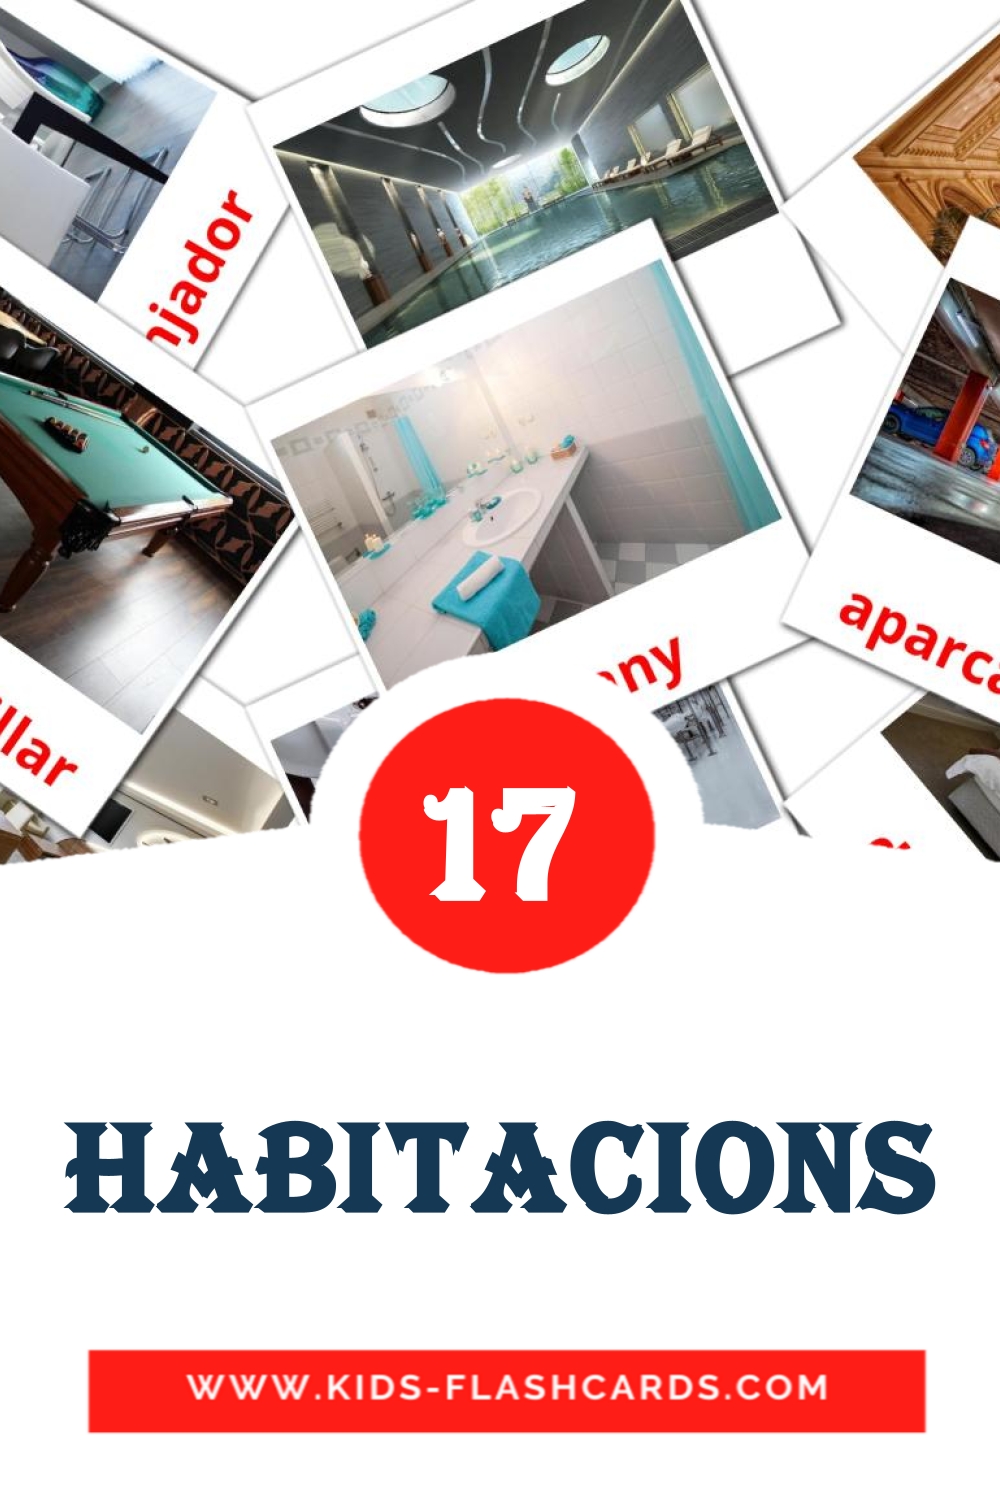 Habitacions на каталонском для Детского Сада (17 карточек)